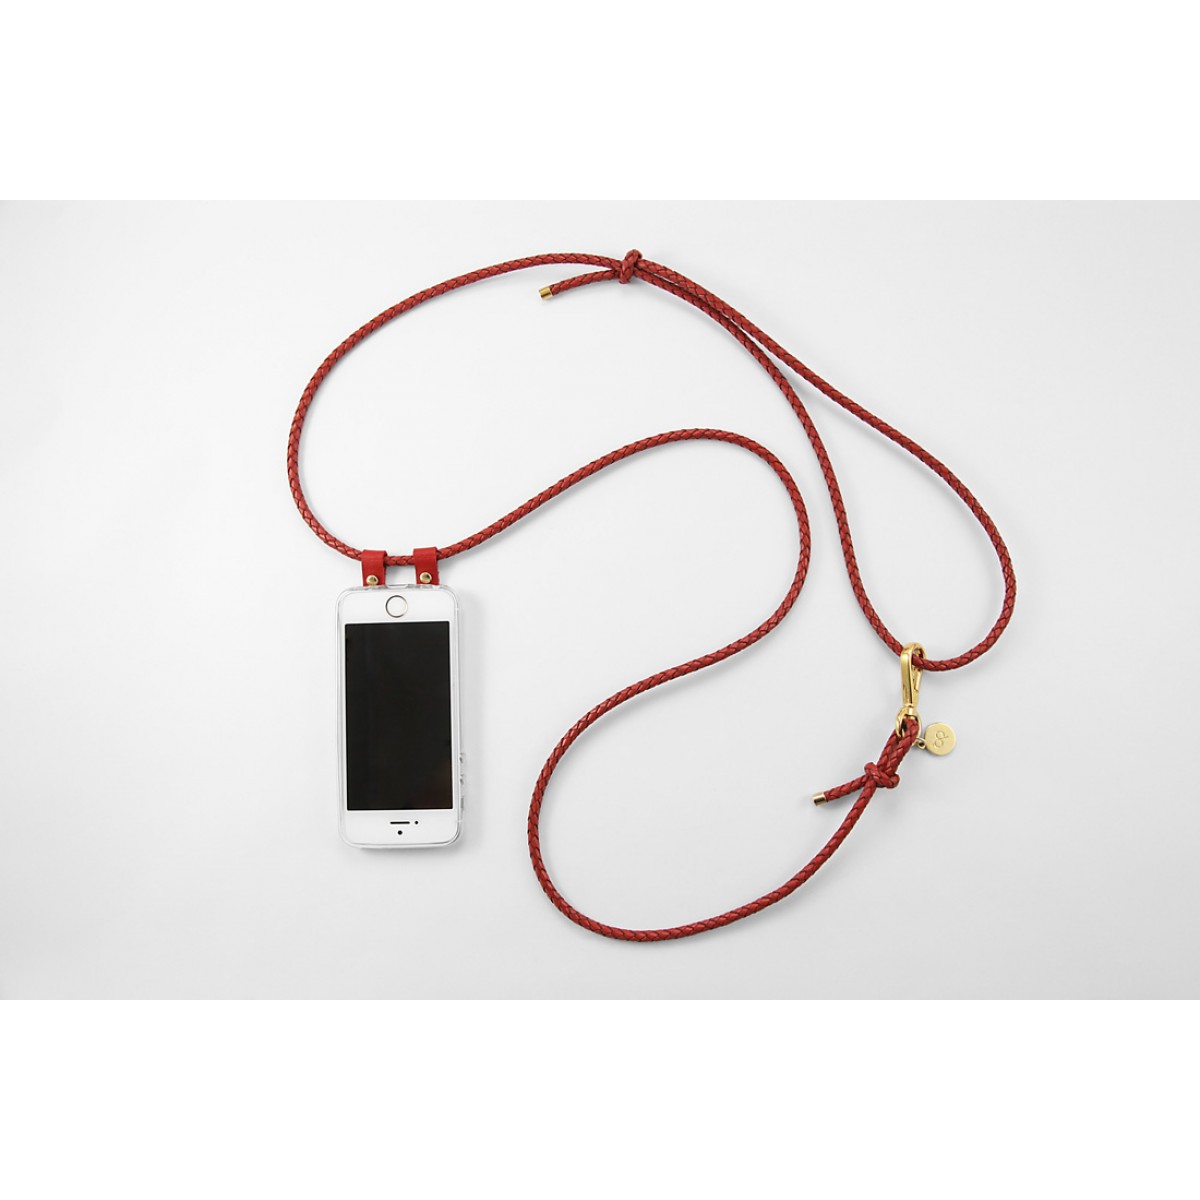 iPhone Hülle zum umhängen mit geflochtener Lederkordel, rot/gold